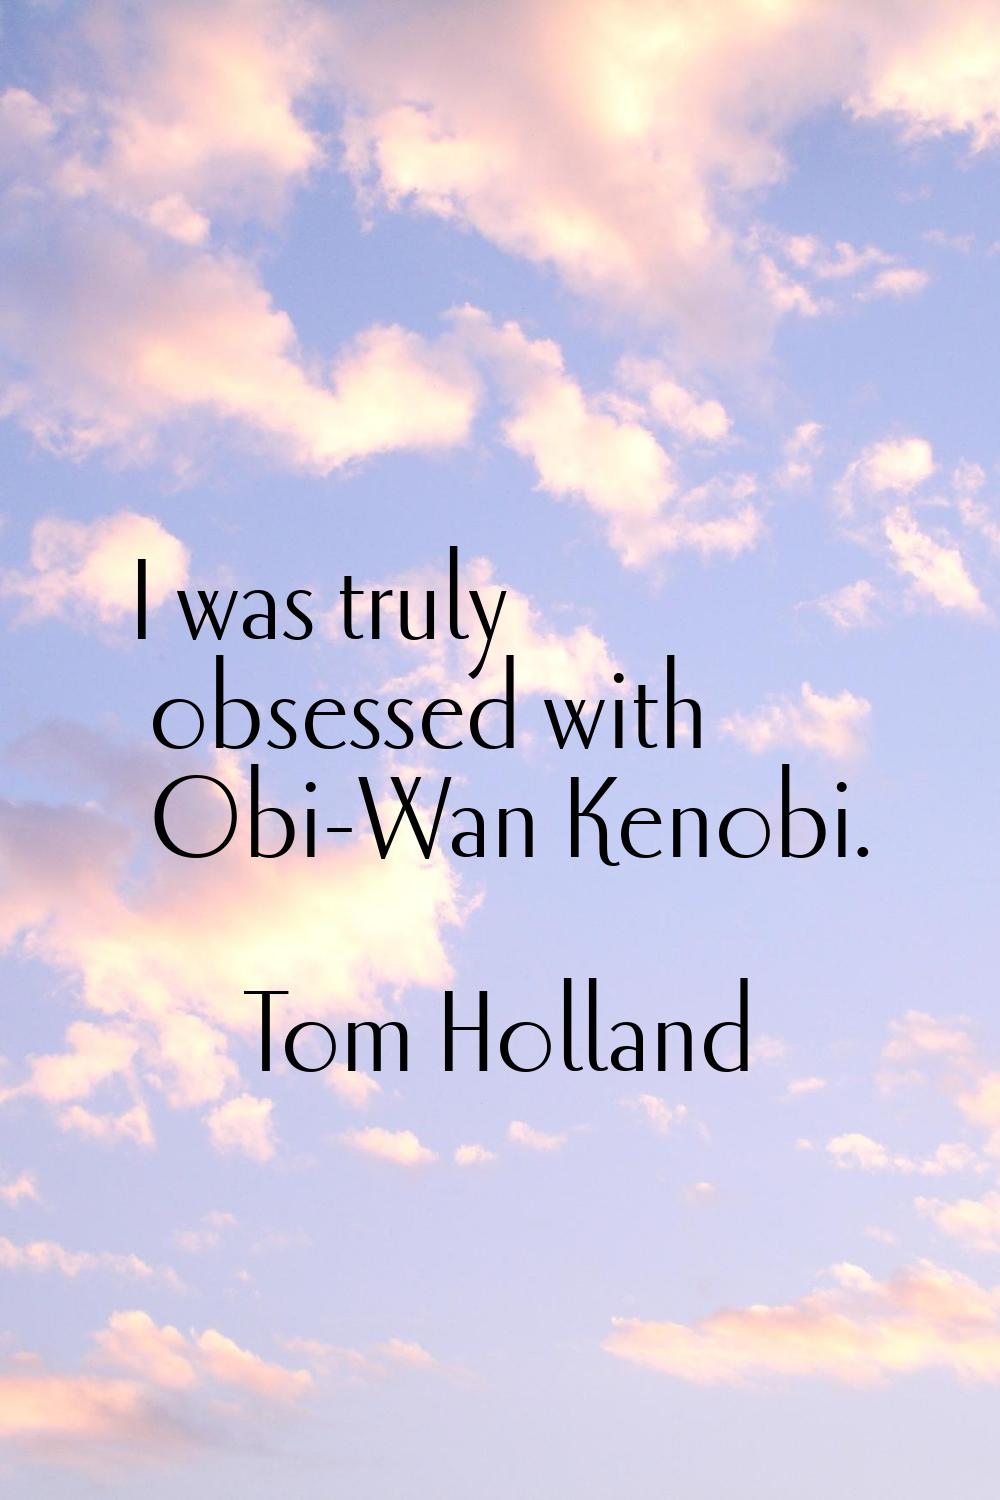 I was truly obsessed with Obi-Wan Kenobi.